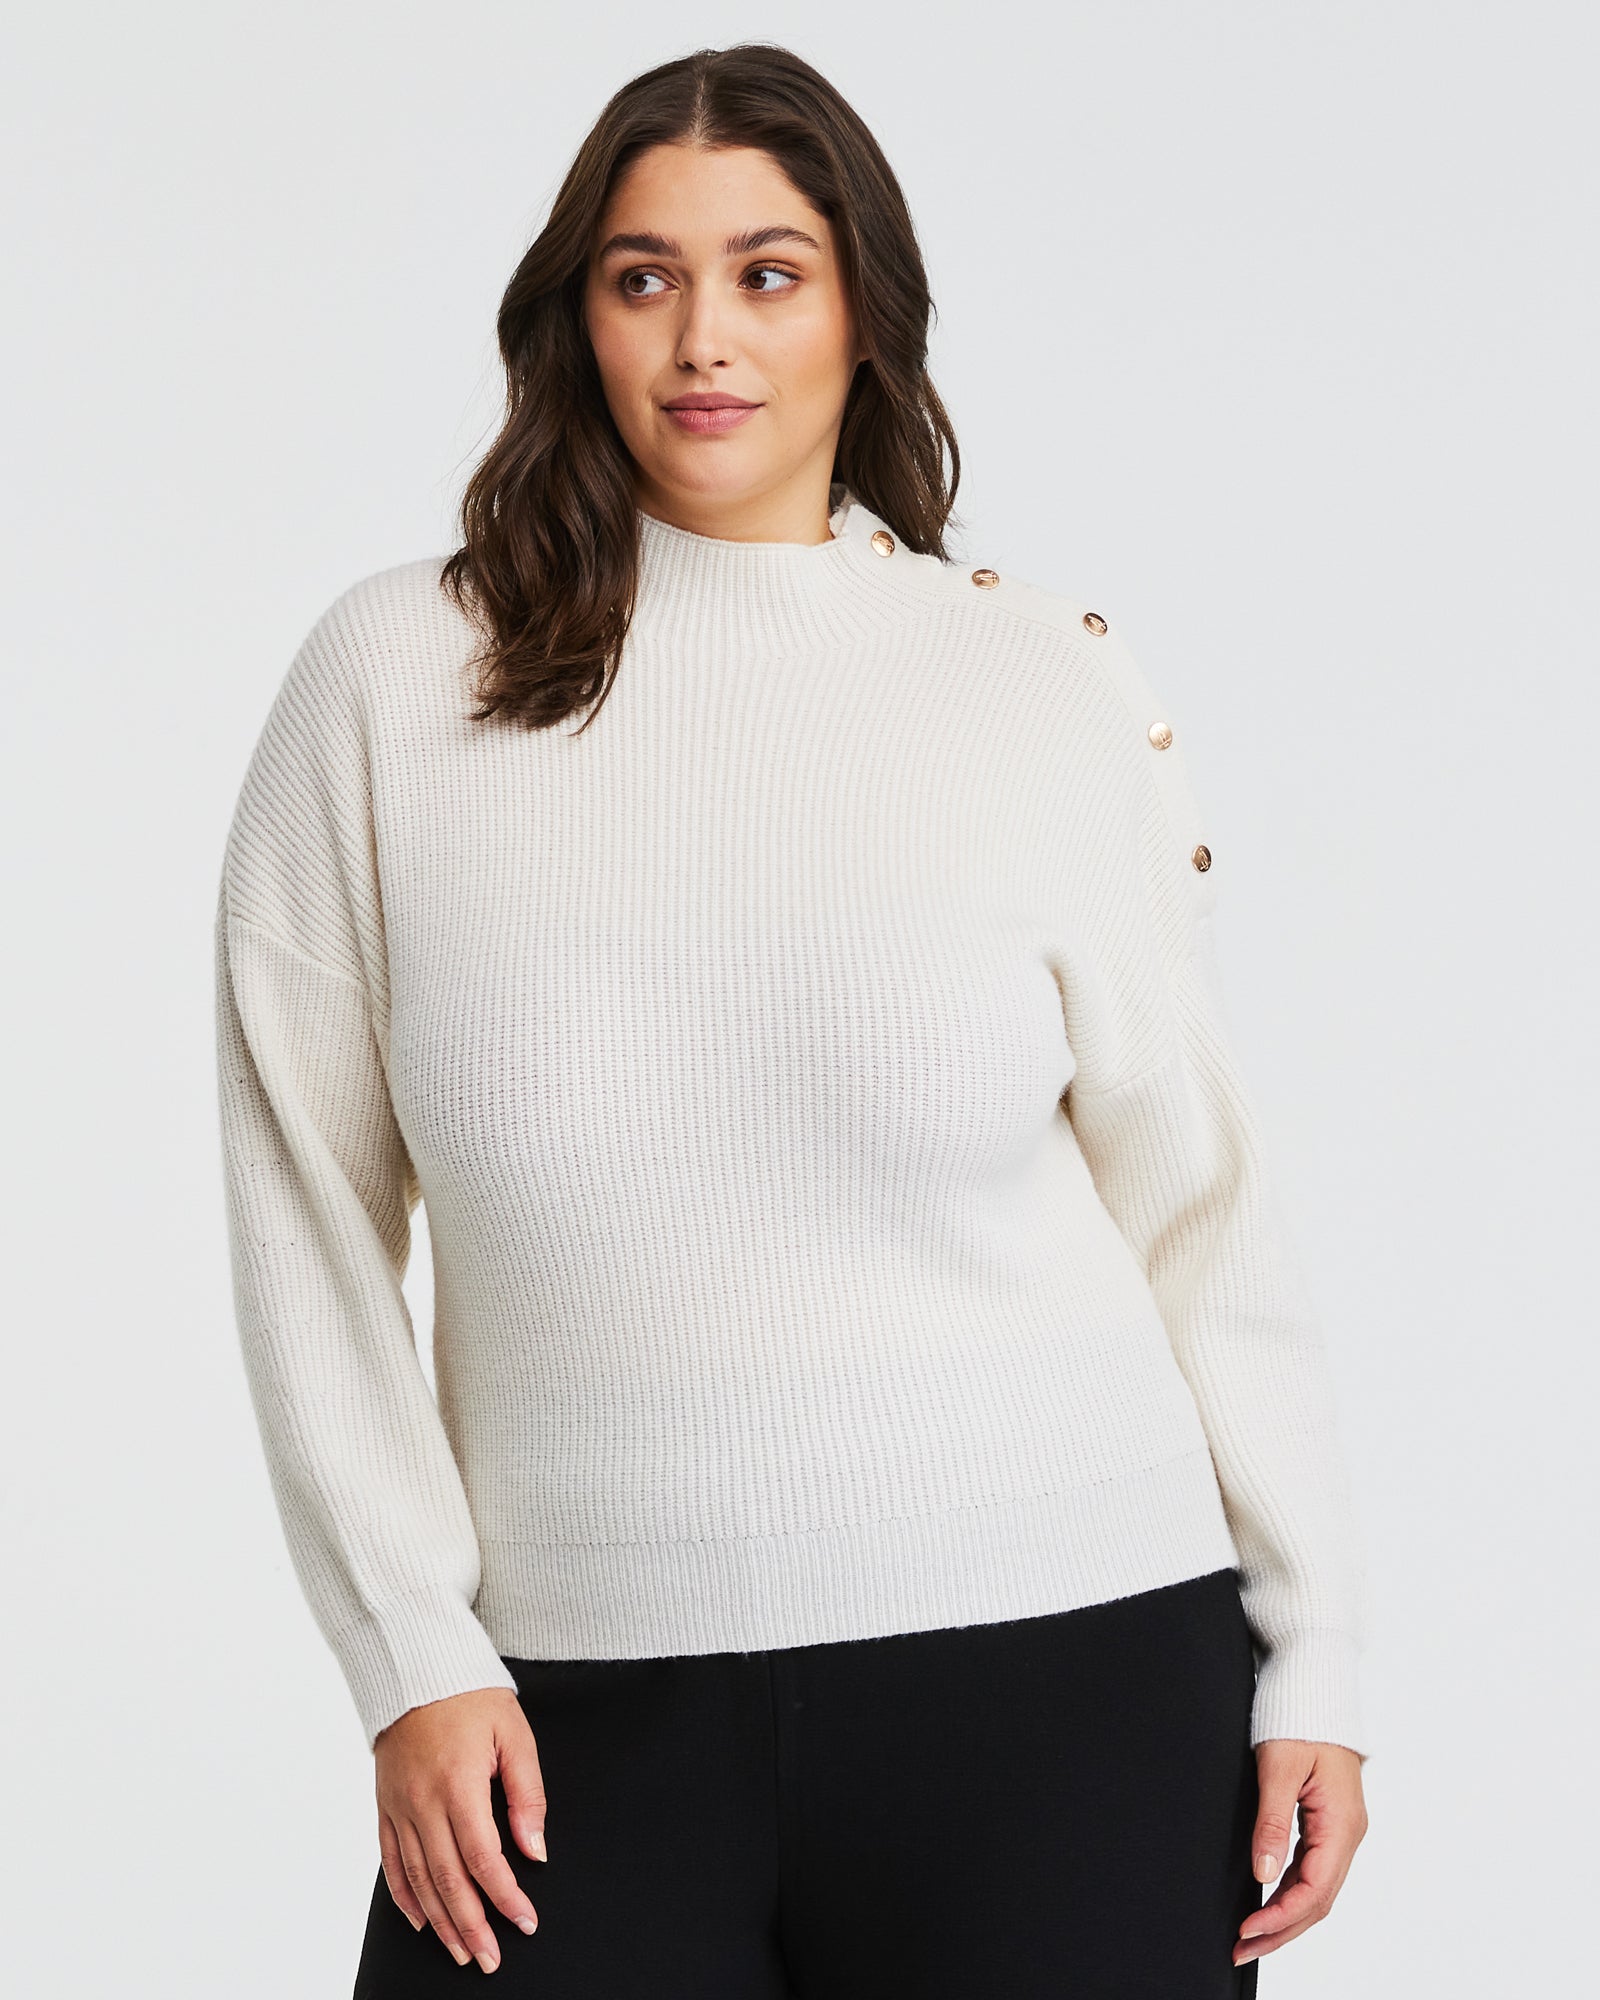 Plus Size Cream Sweater - Estelle US